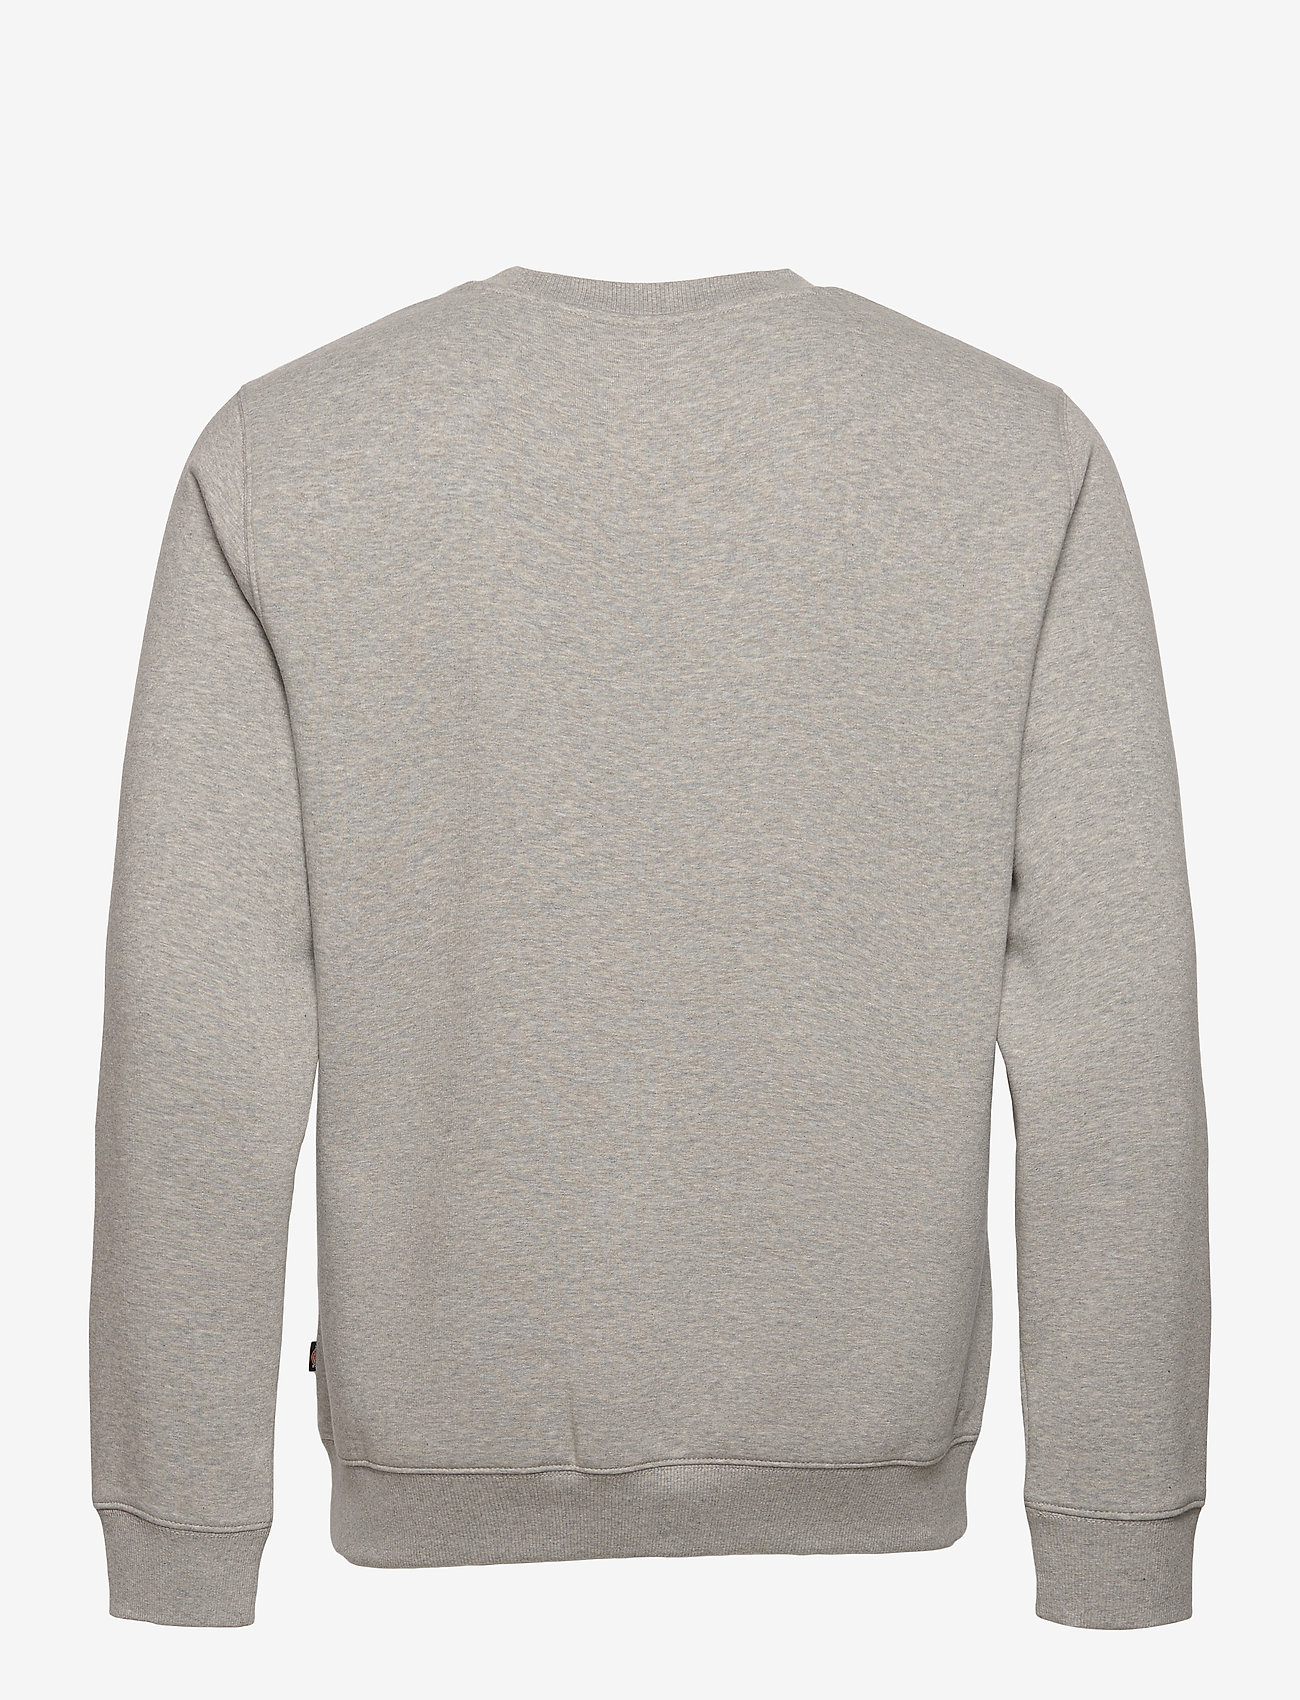 Dickies - OAKPORT SWEATSHIRT - sweatshirts - grey melange - 1